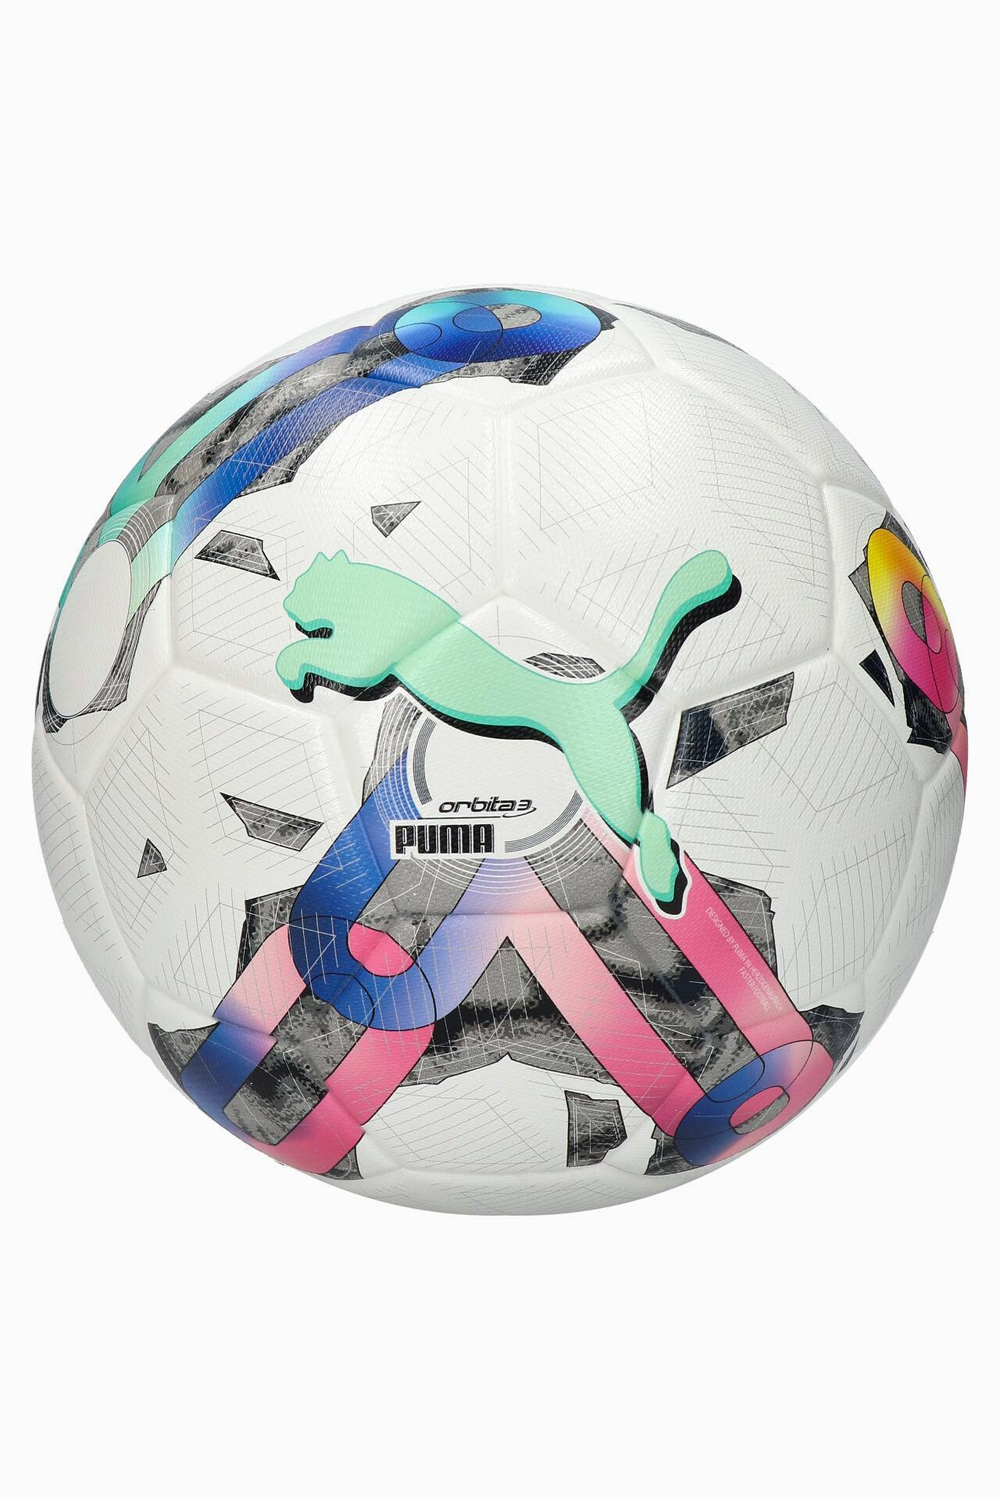 Футбольный мяч Puma Orbita 3 FIFA Quality Pro размер 5